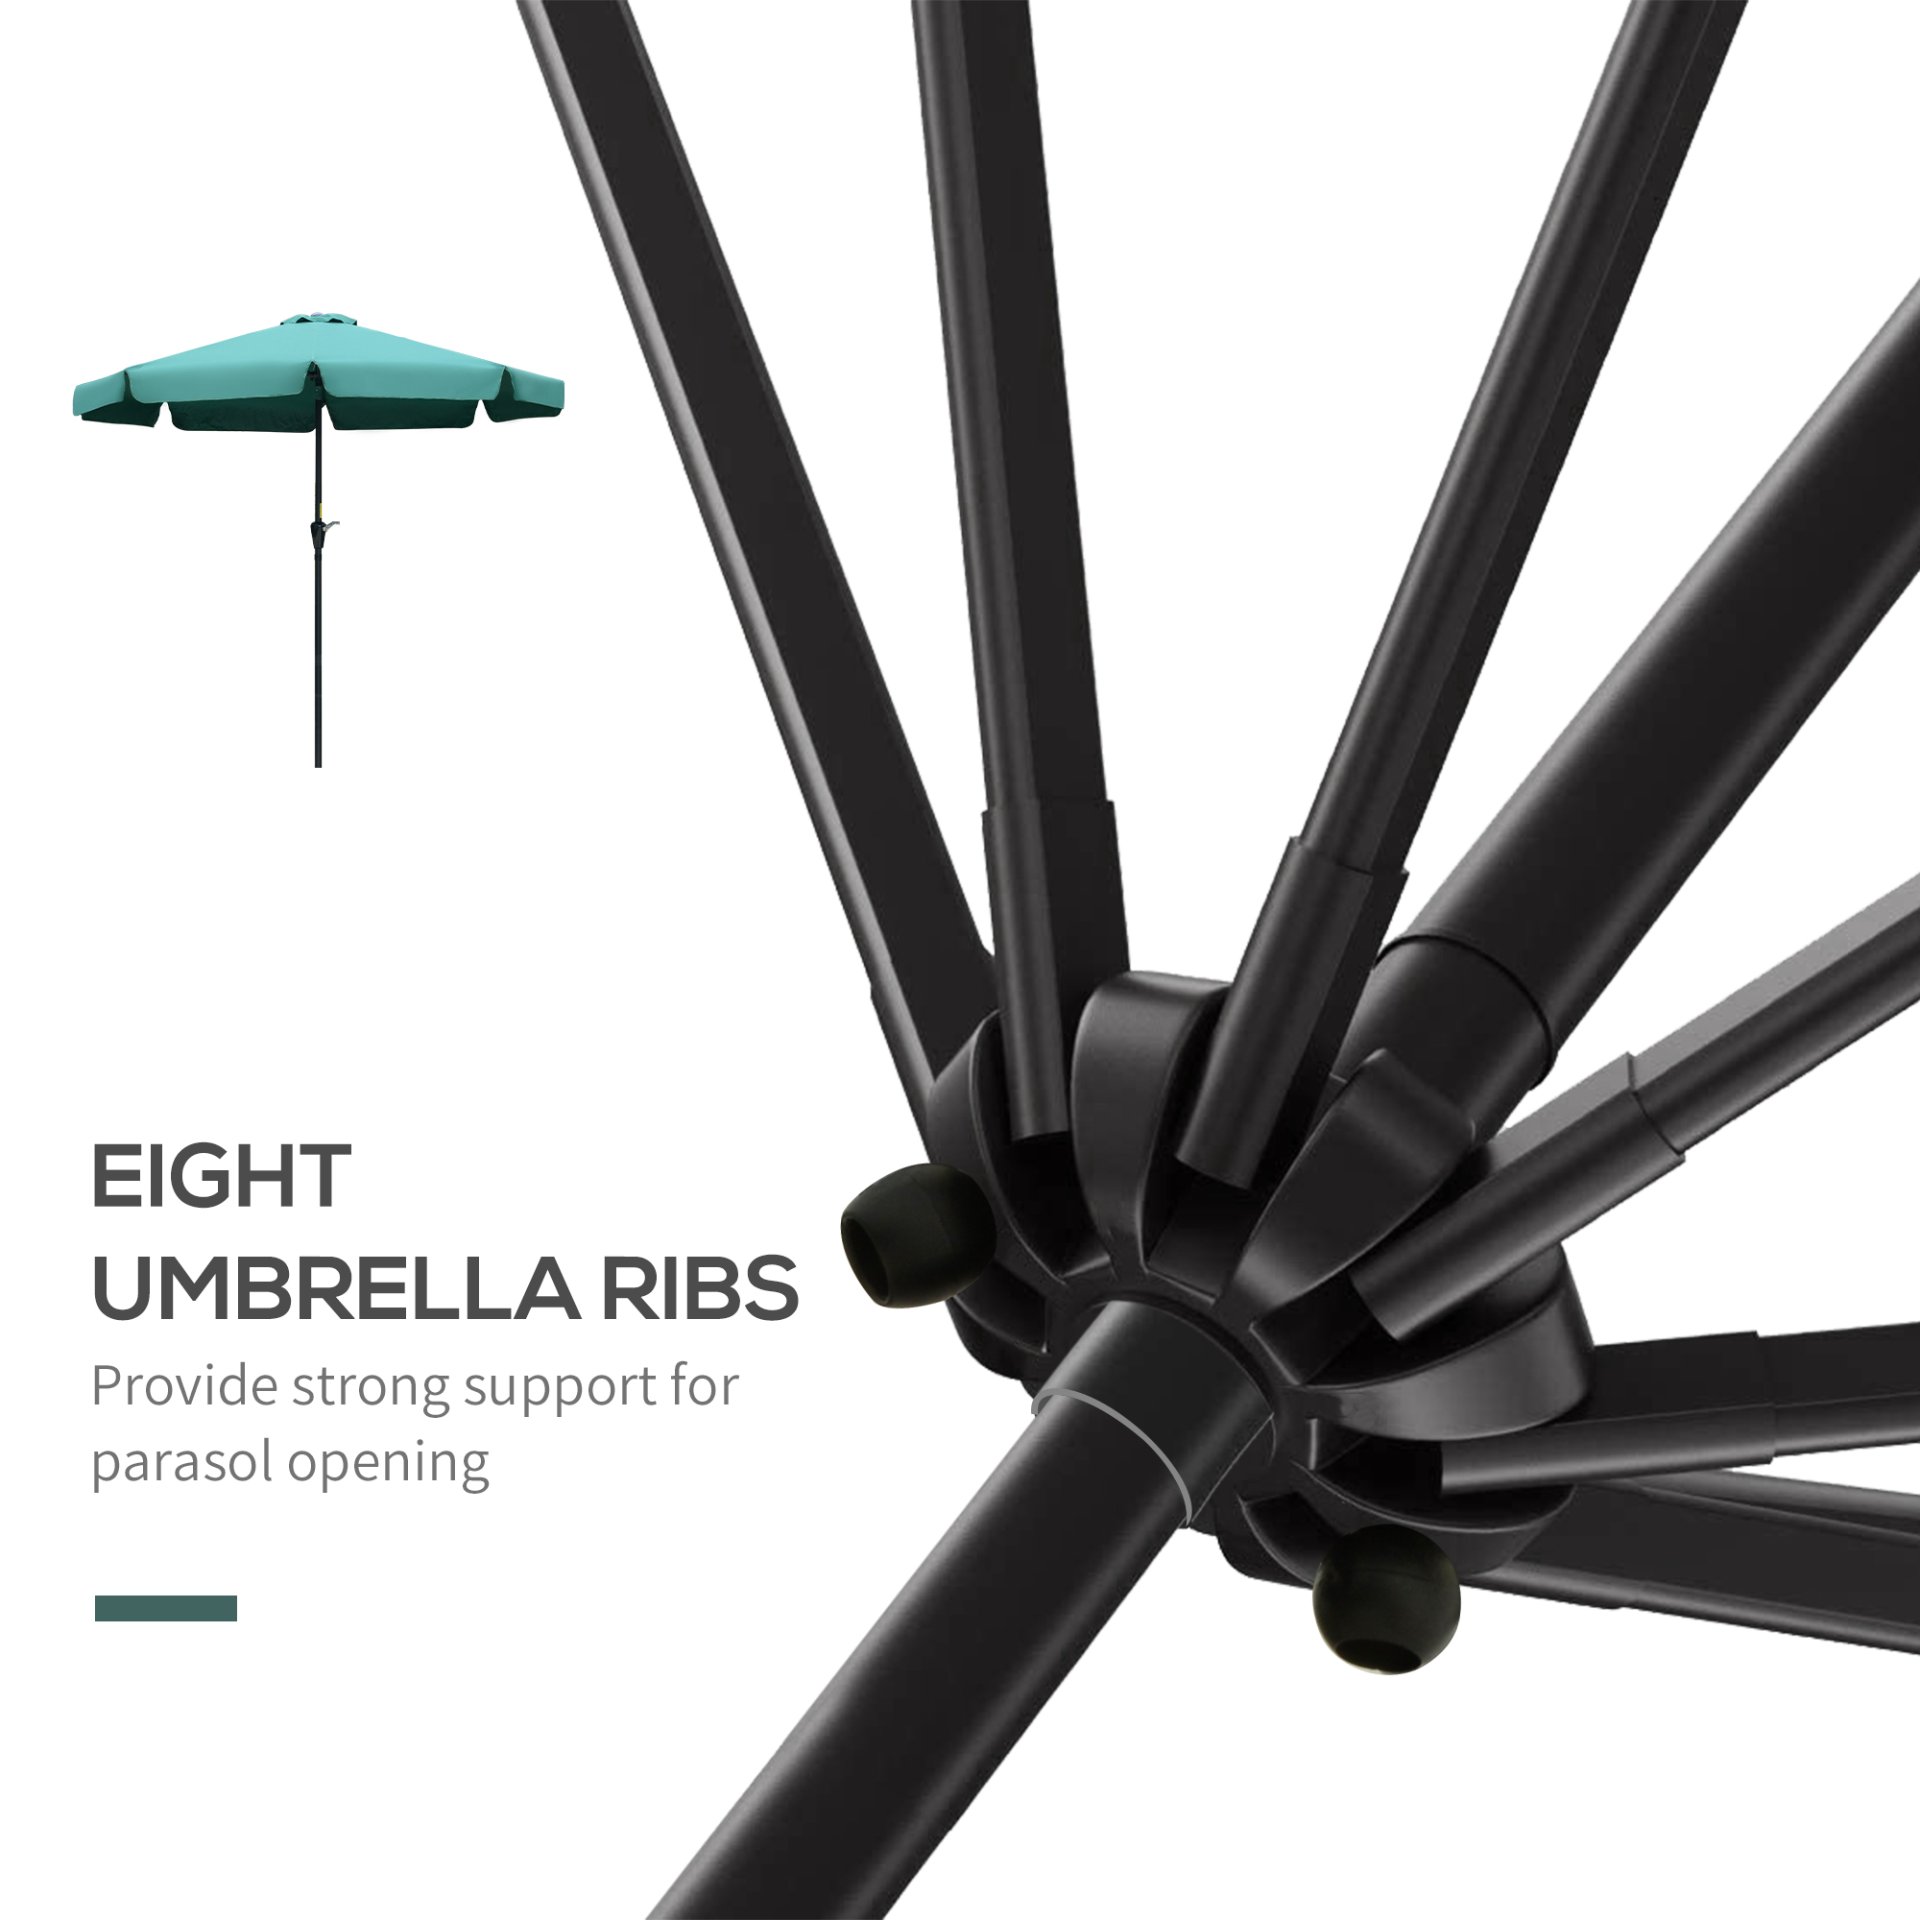 Outsunny 2.7m Patio Parasol Garden Umbrellas Outdoor Sun Shade Table Umbrella with Tilt, Crank, 8 Ribs, Ruffles, Green